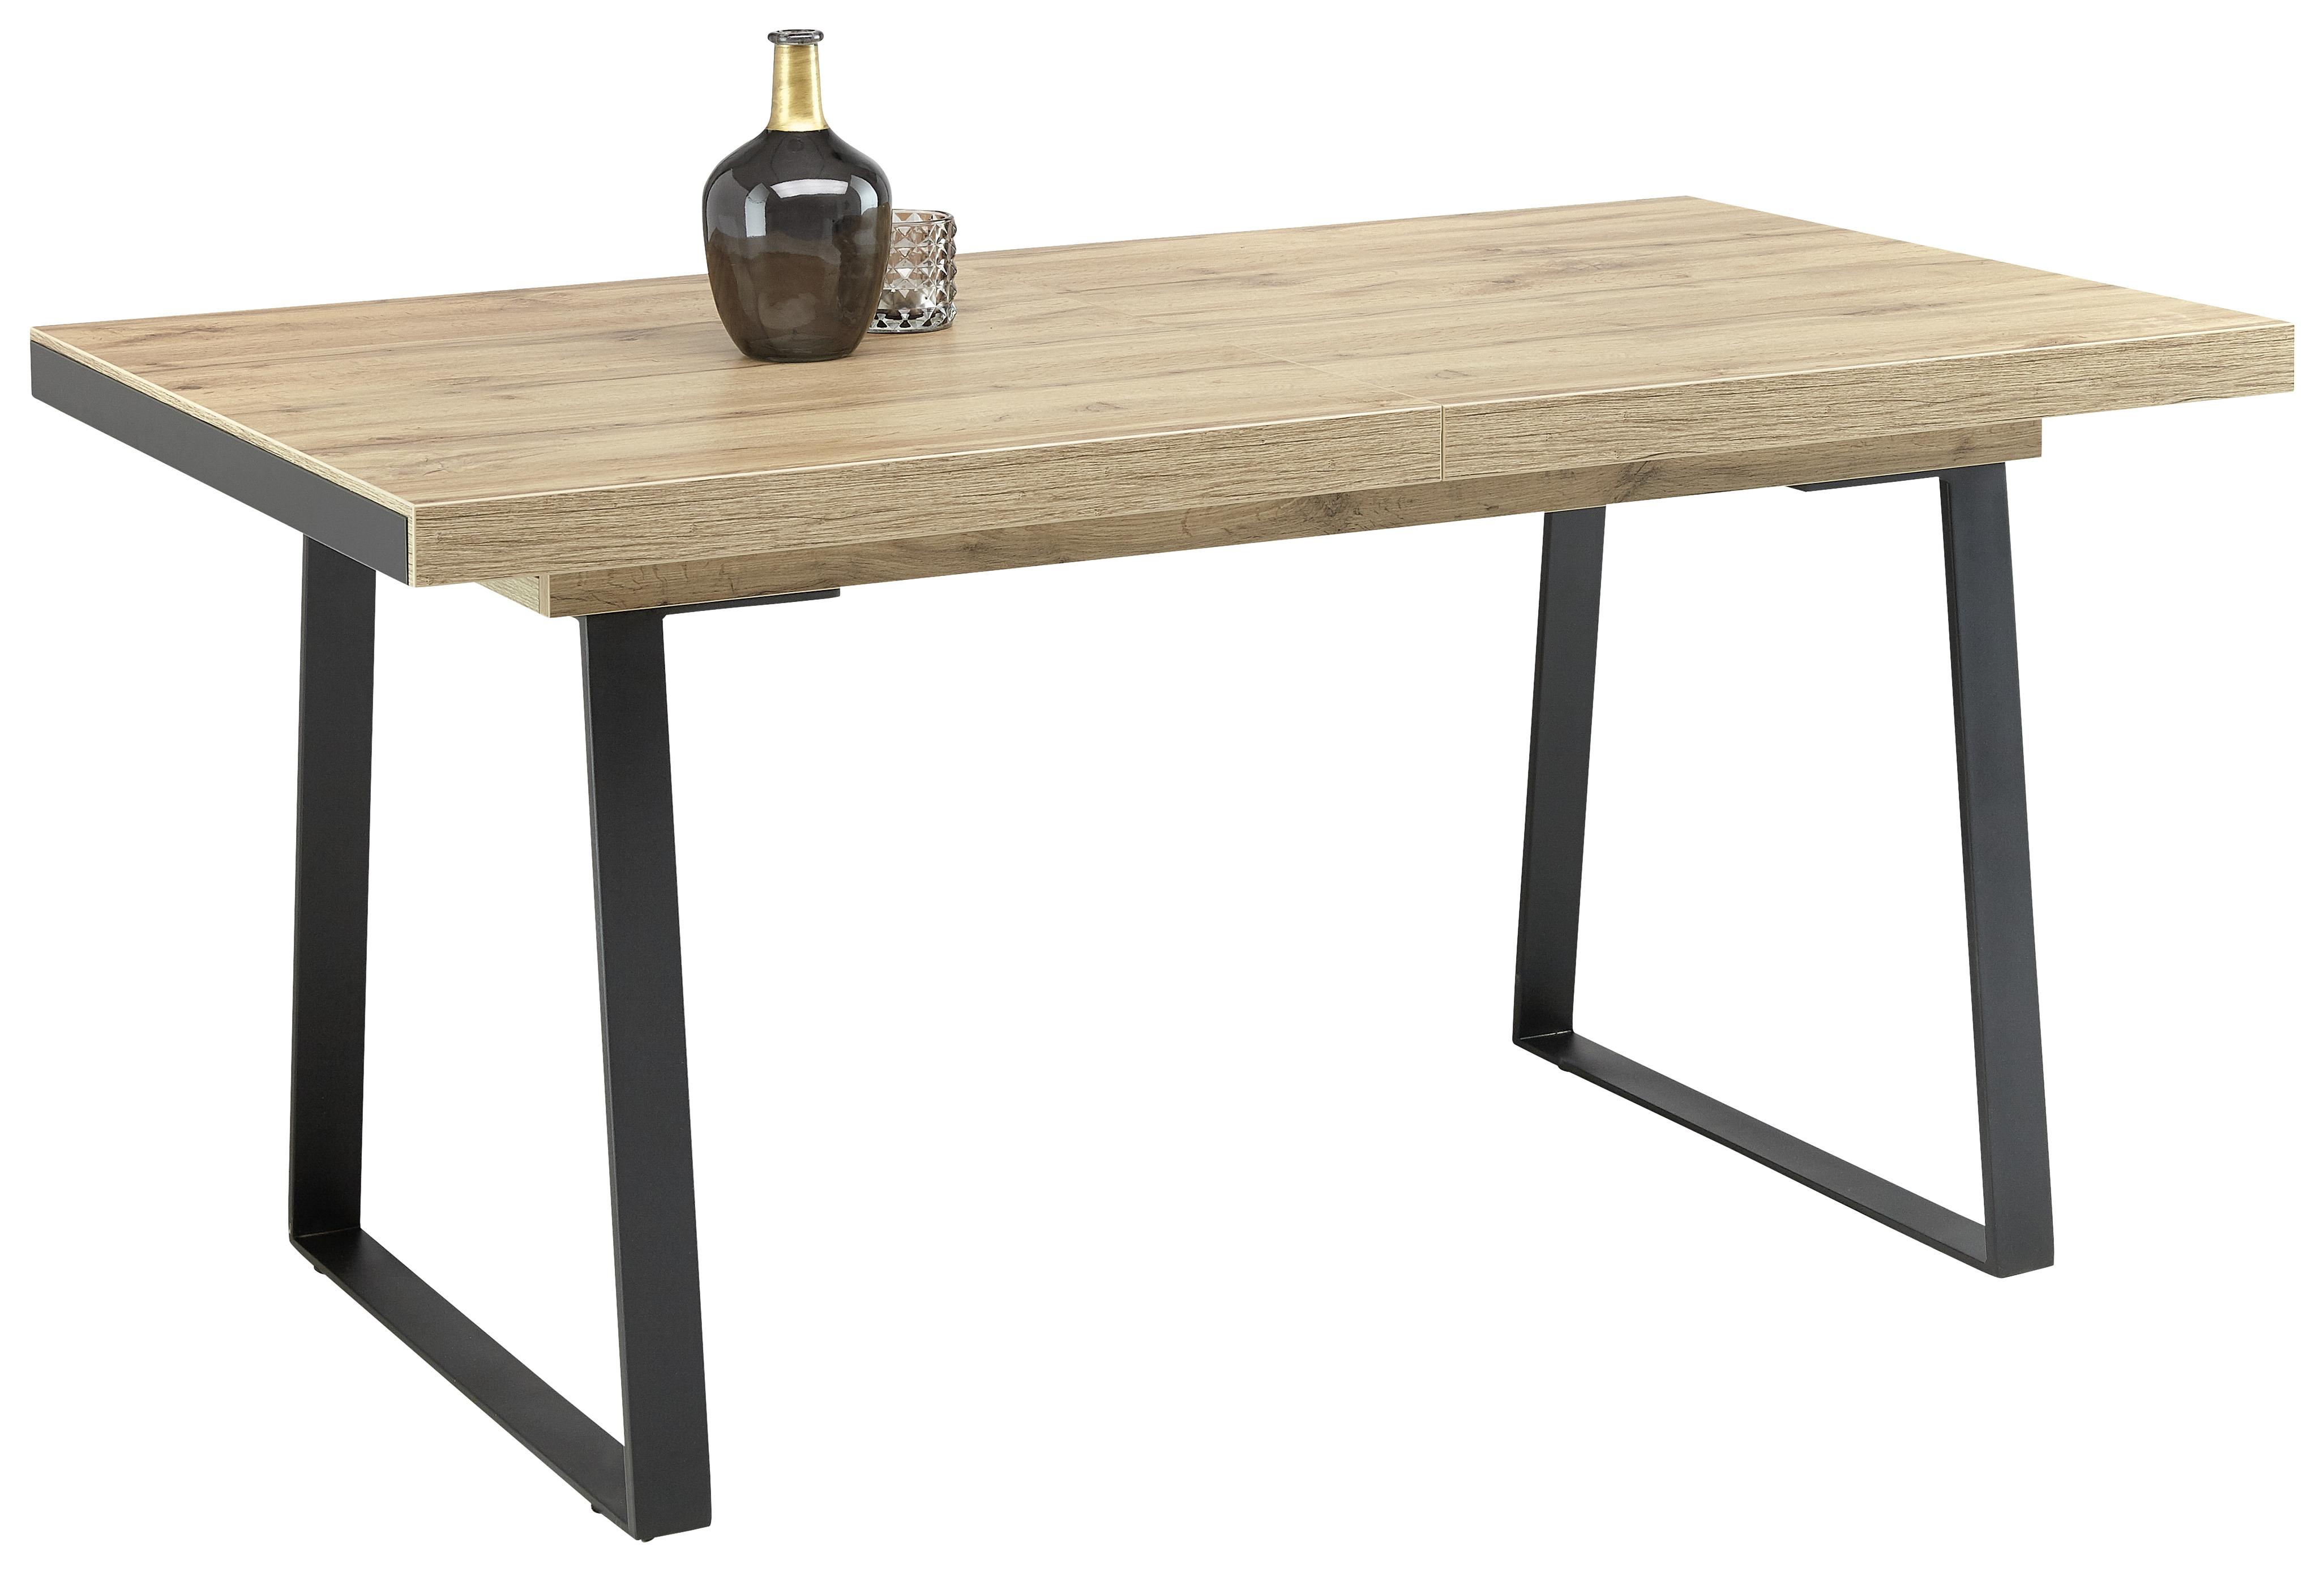 Výsuvný Stůl Skagen 160 Az - černá/barvy dubu, Moderní, kov/kompozitní dřevo (160-205/90/76cm) - Premium Living